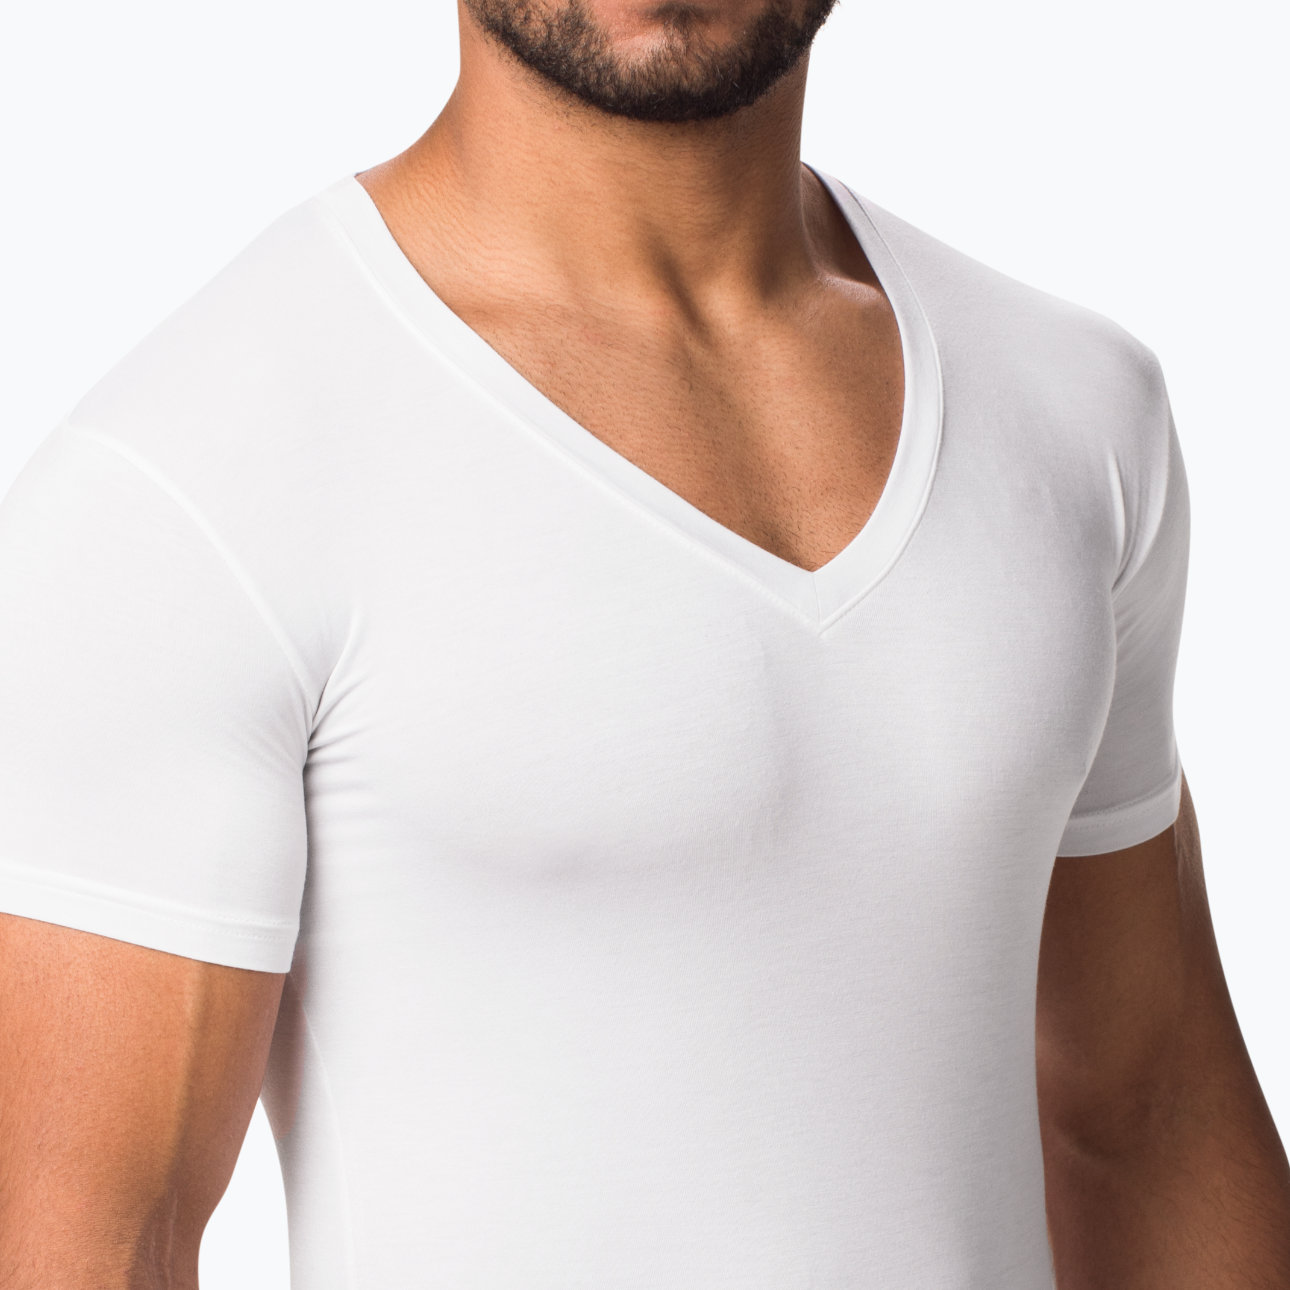 UnderFit™ White V-Neck Undershirt: √ Slim Fit √ Stays Tucked √ Ultra Comfy